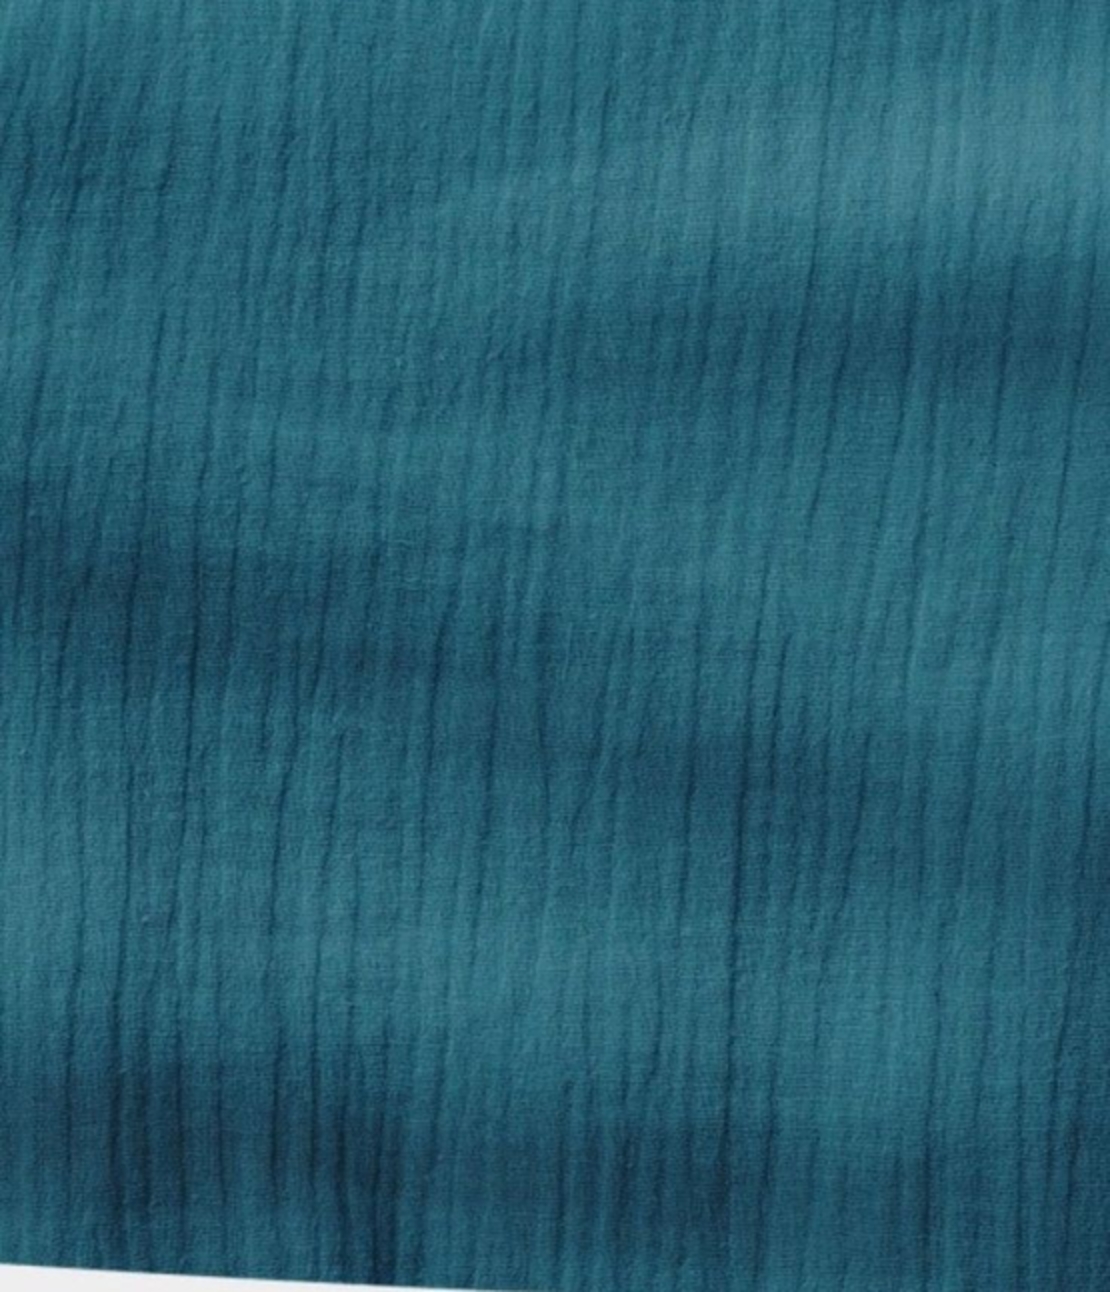 אריג דאבל טטרה צבע כחול פטרול